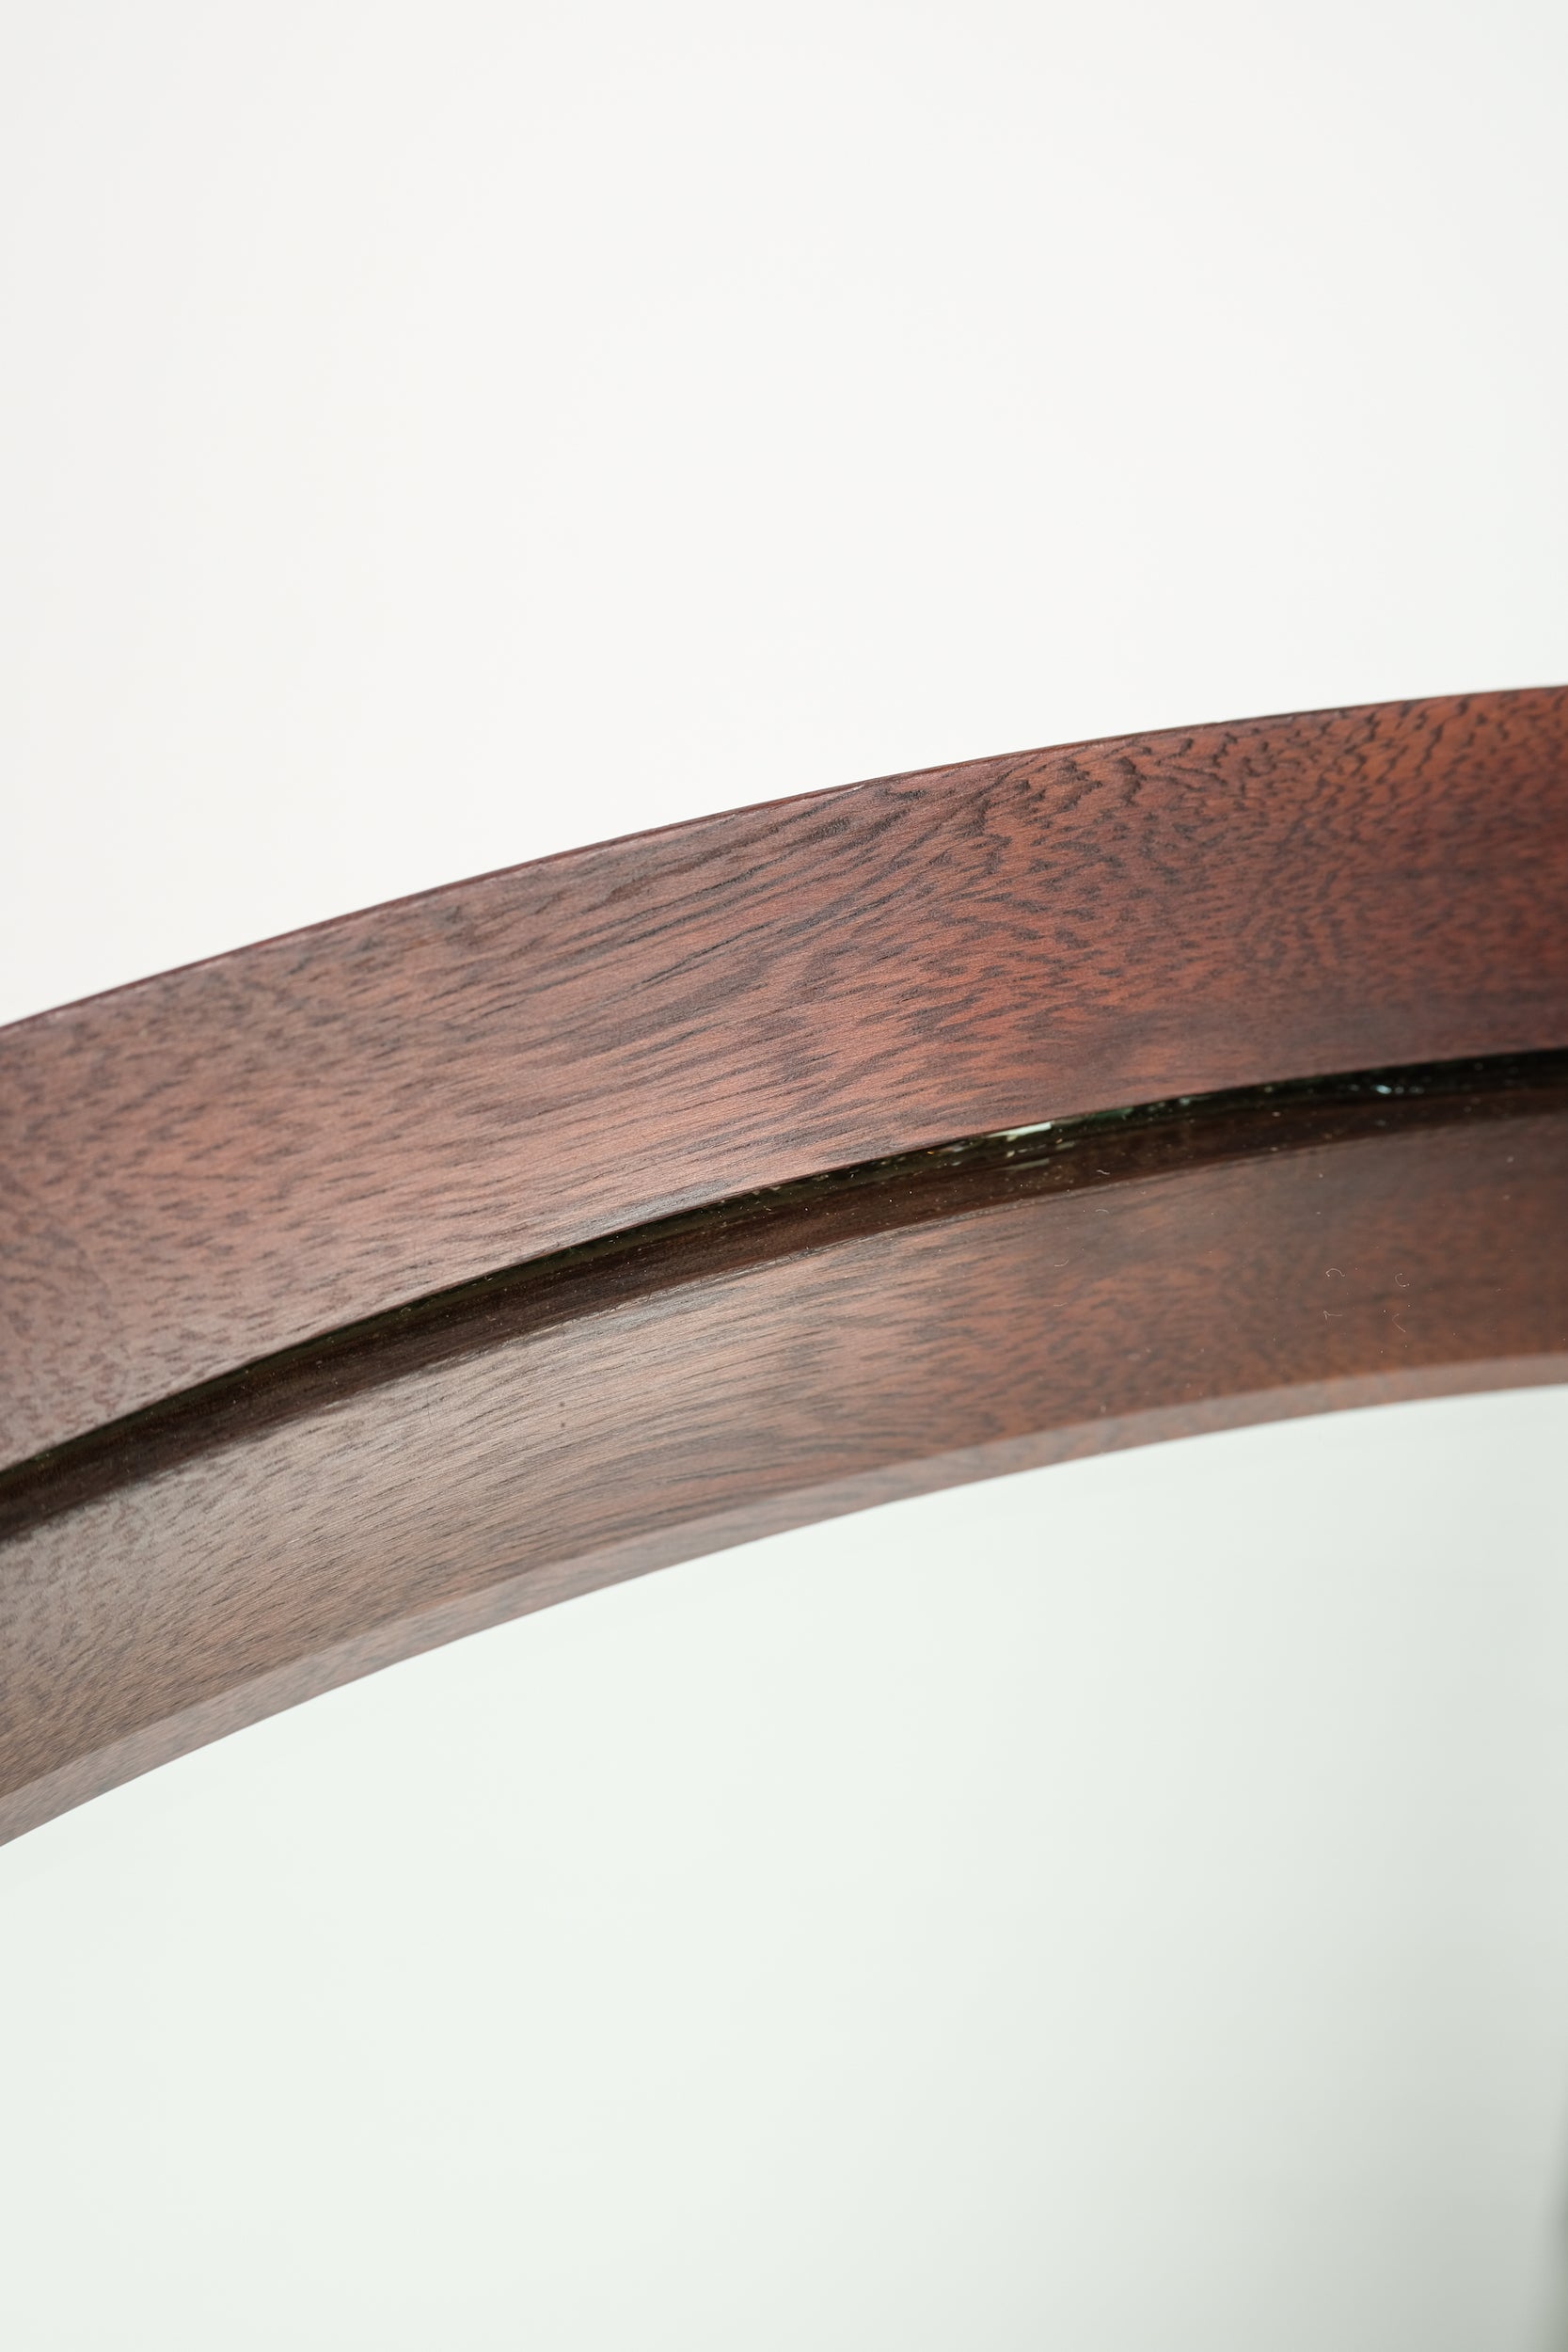 Italian round mirror, mahogany, leather 60s